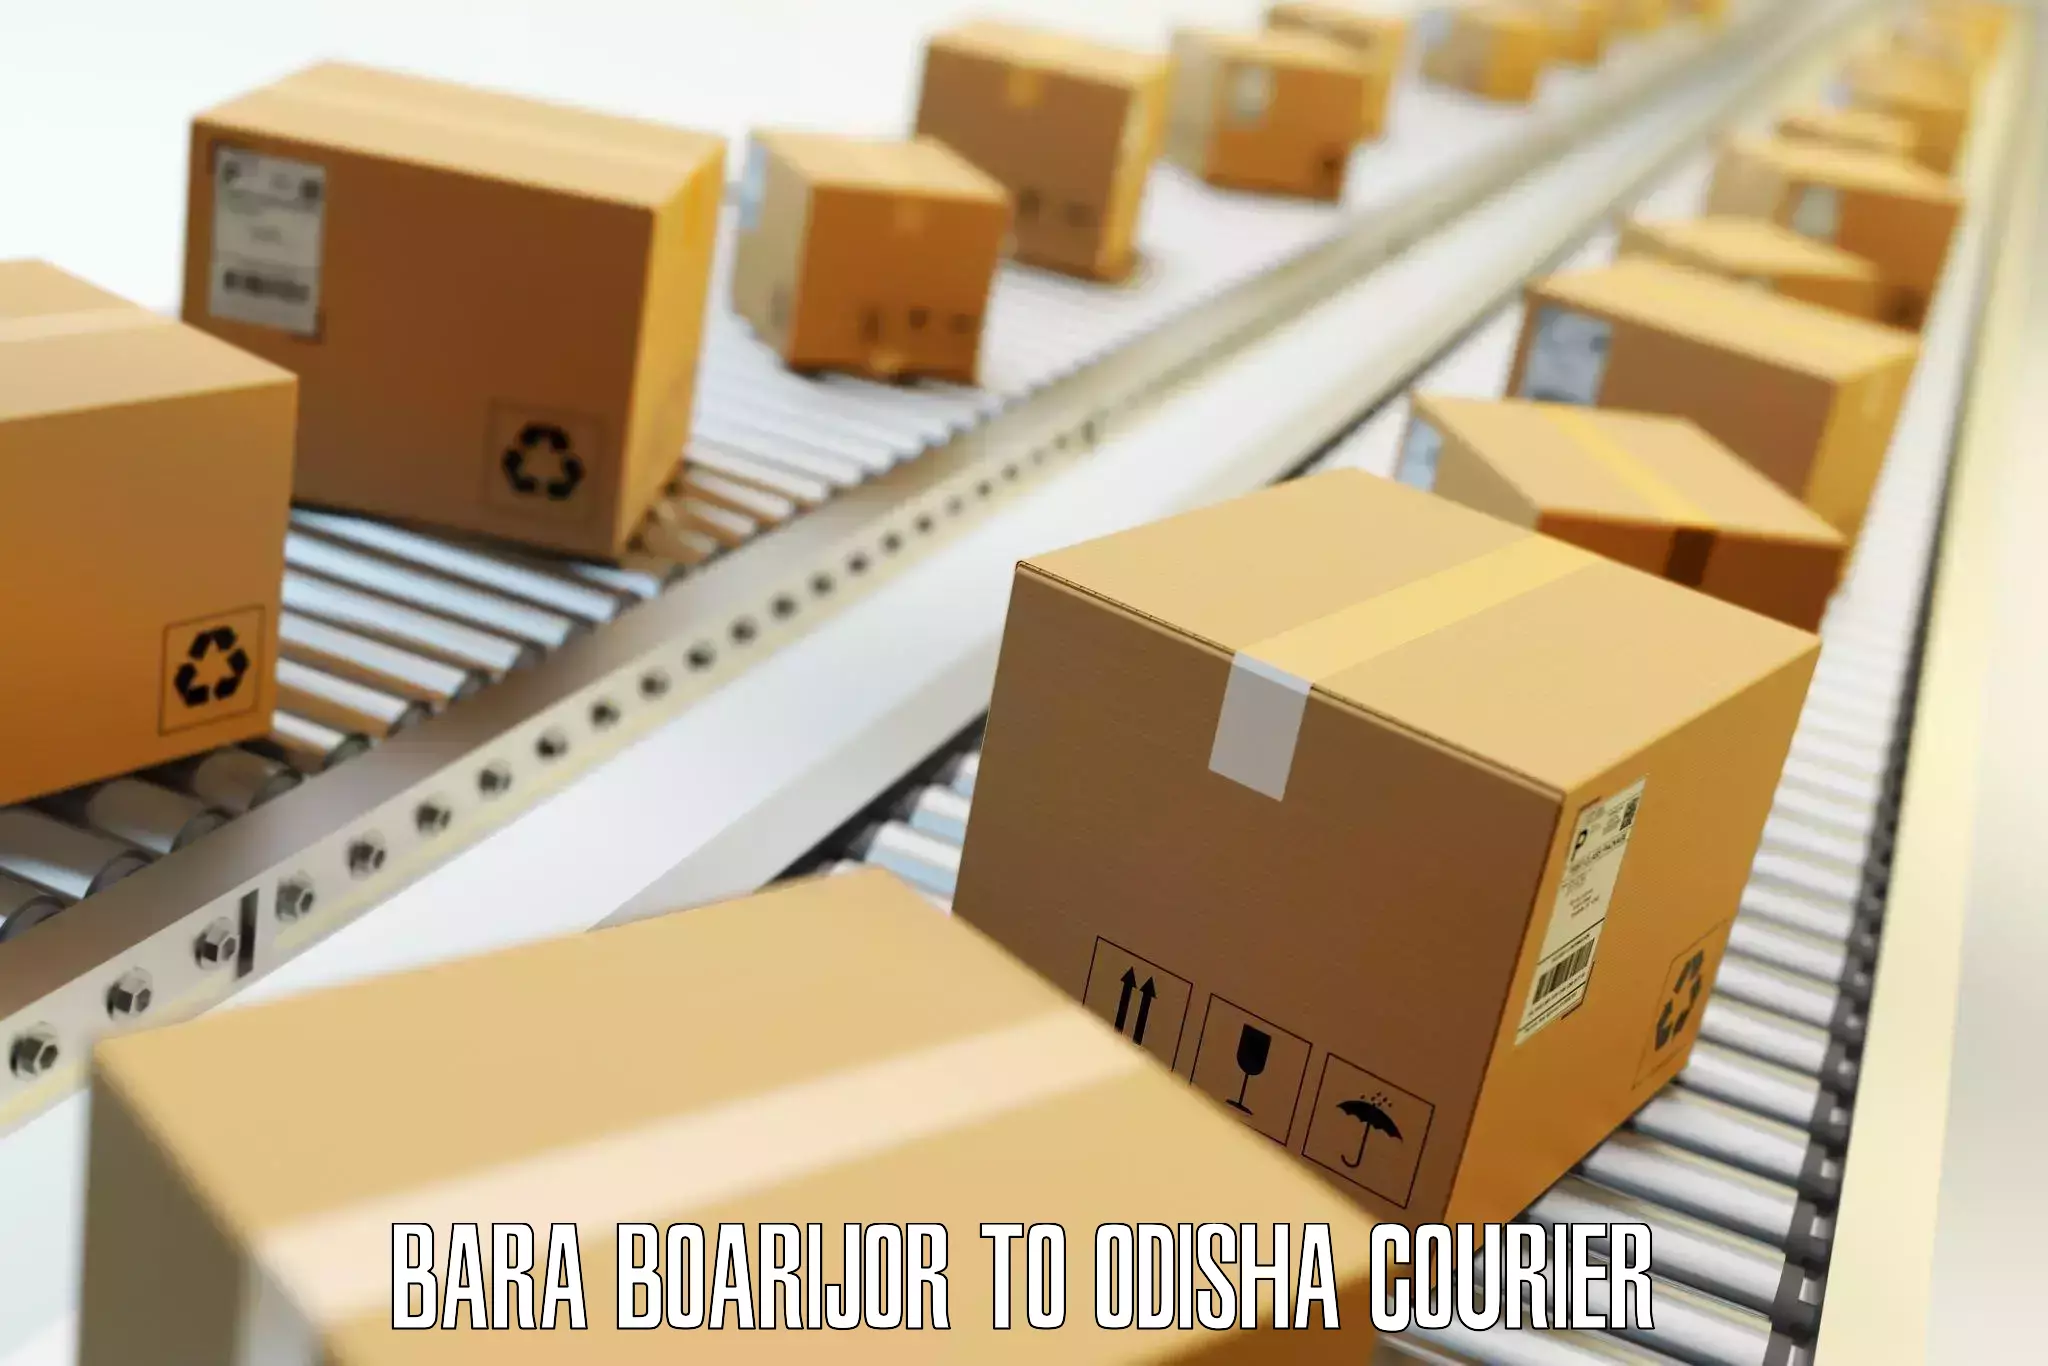 Premium luggage delivery Bara Boarijor to Udala